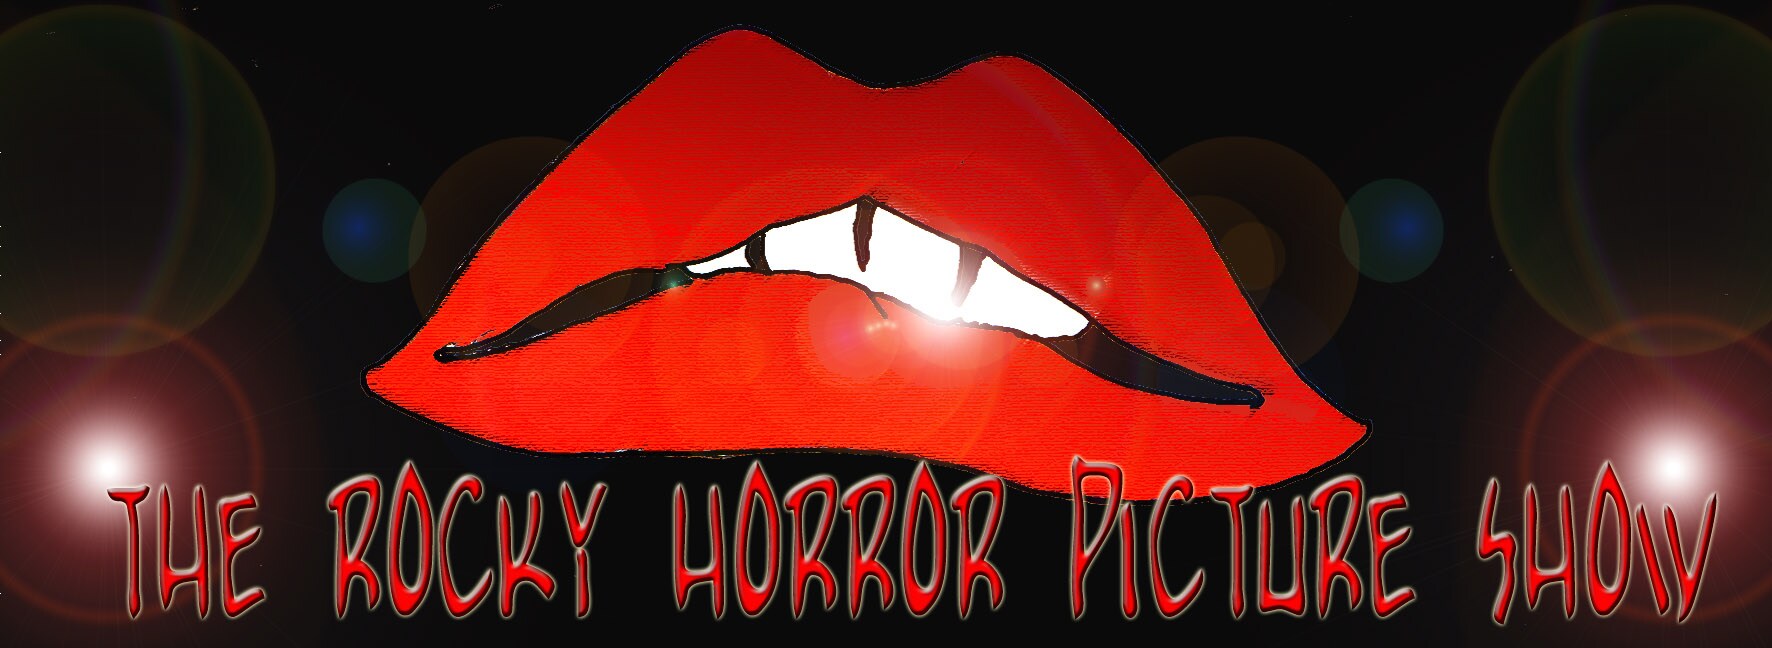 Immagine in primo piano di carnose labbra rosse (Per leggerne la descrizione proseguire nel link). Si vede la sensuale bocca carnosa e, al di sotto, la scritta: 'The Rocky Horror Picture Show'. Ai lati, dei punti di luce su sfondo scuro.